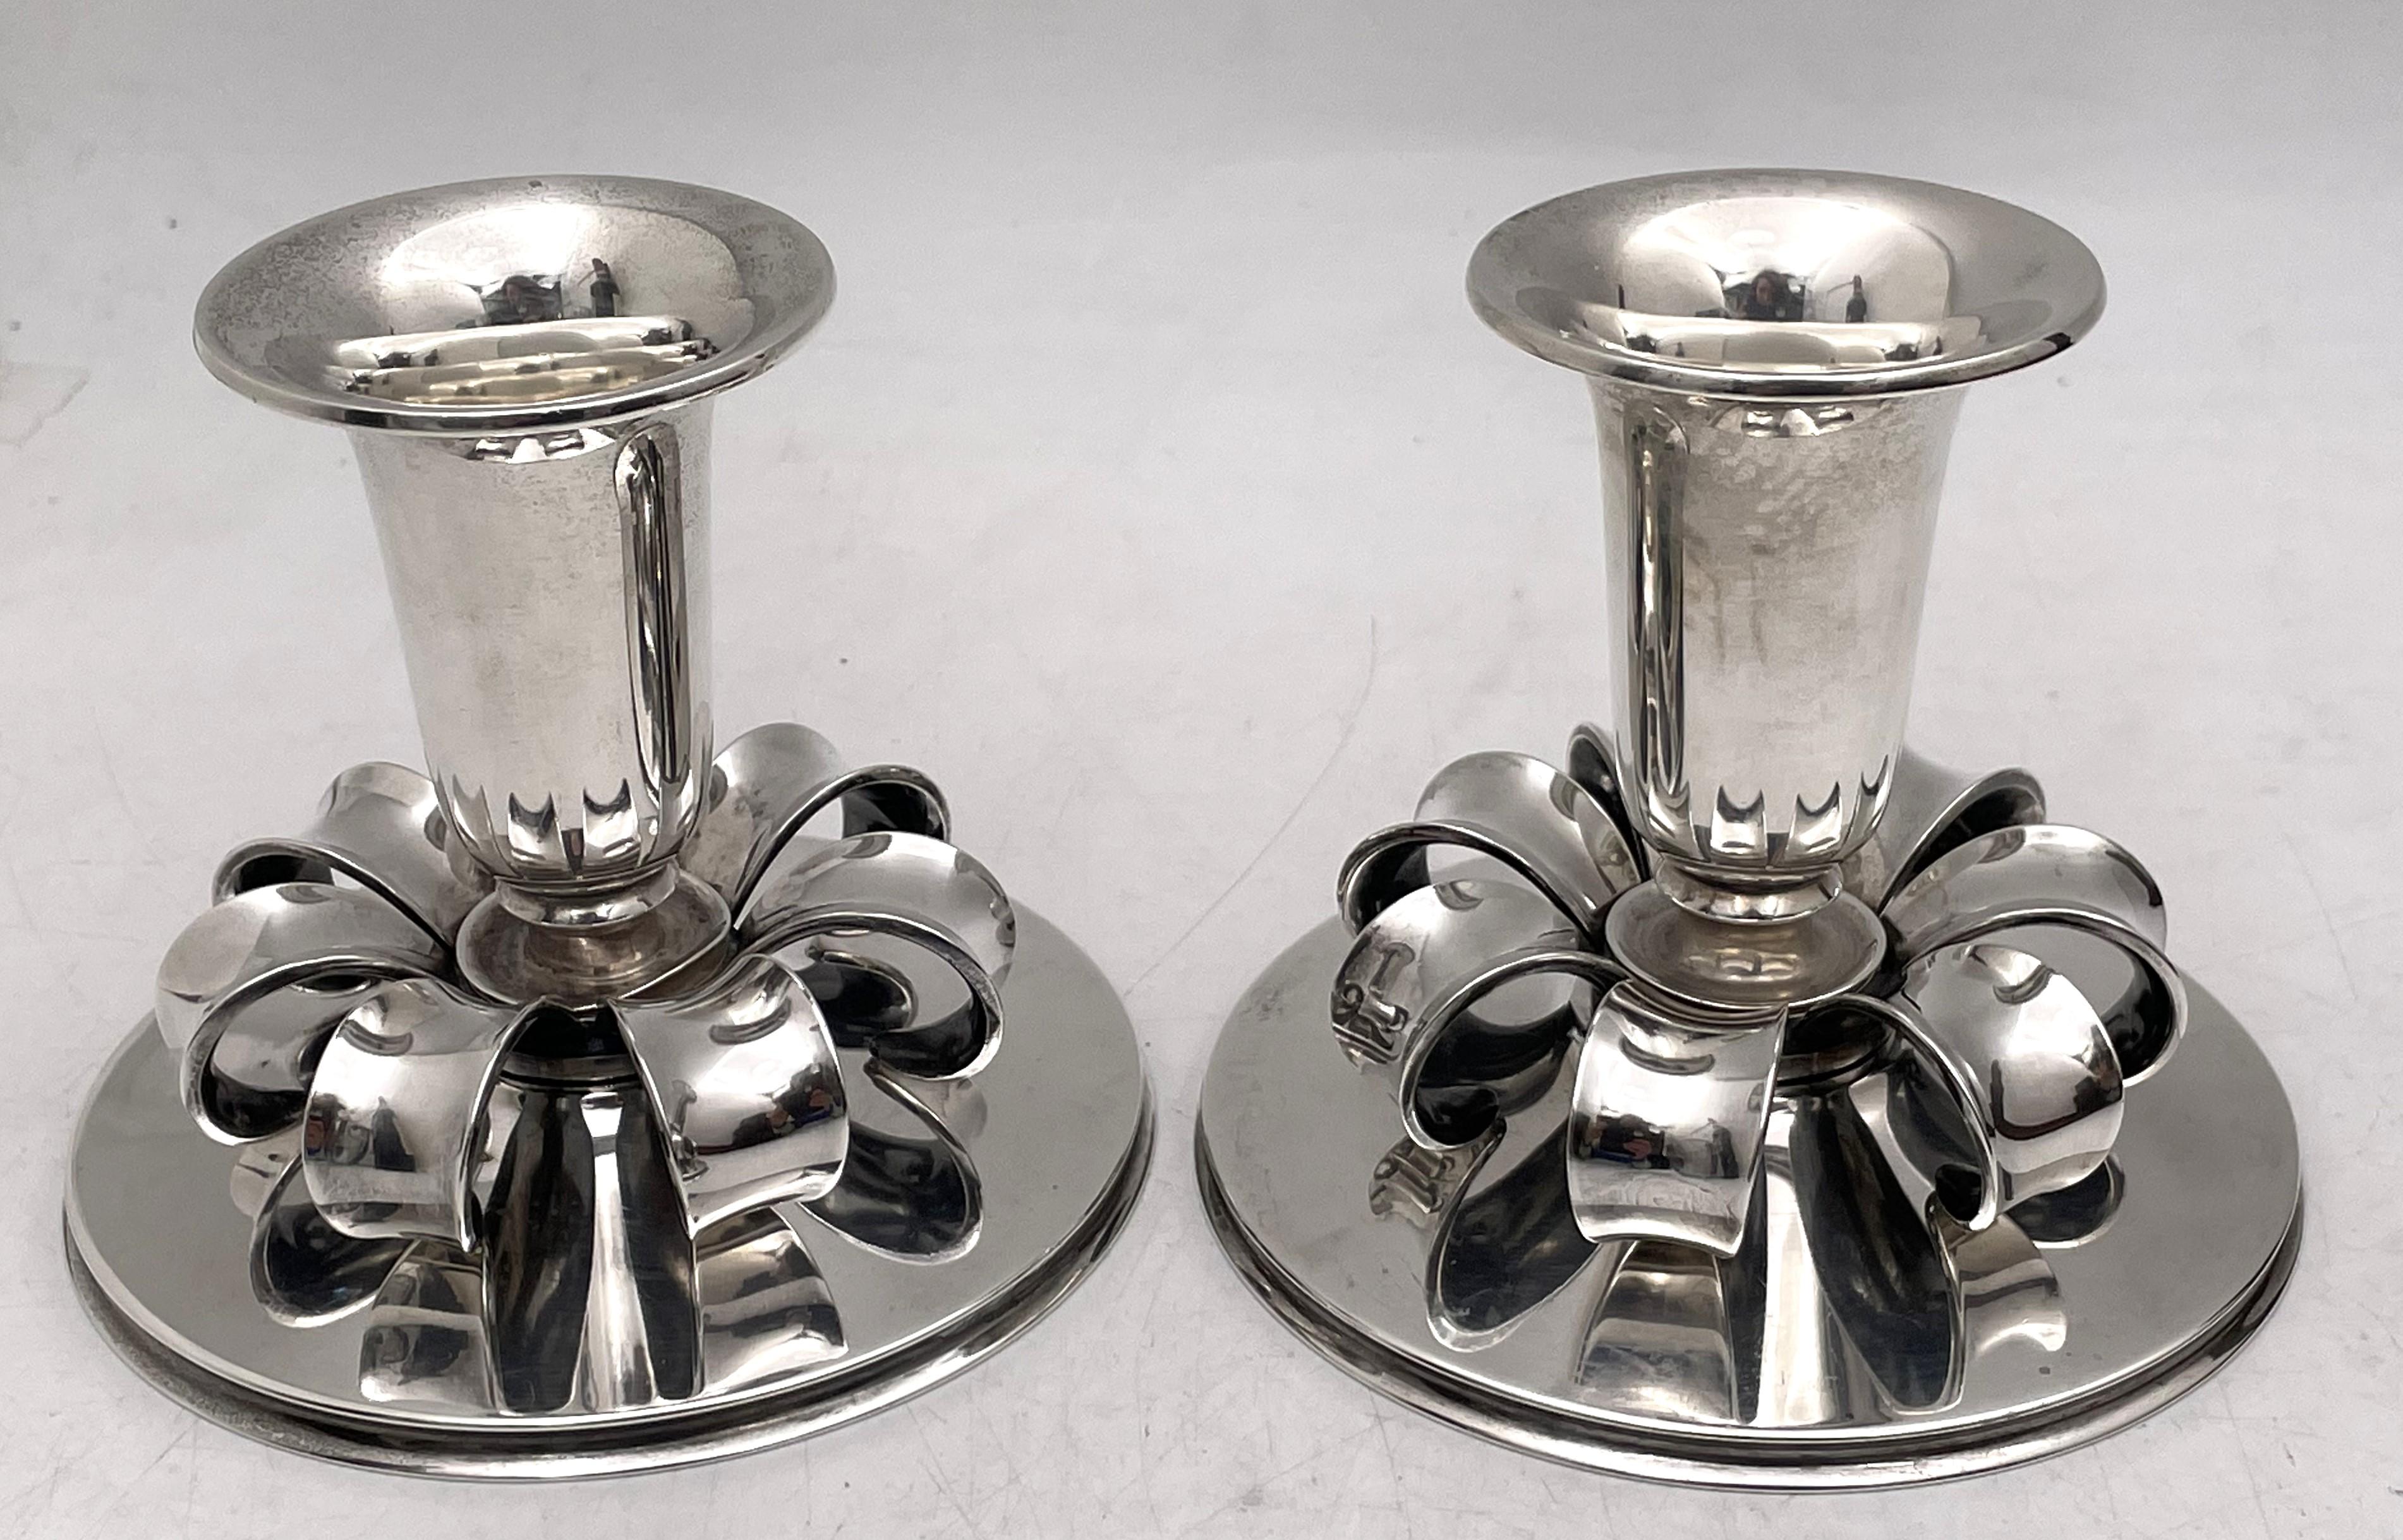 Cohr, paire danoise de chandeliers à huile en argent sterling dans un style élégant, géométrique et moderne du milieu du siècle, ainsi que dans une qualité et un style rappelant Georg Jensen. Ils mesurent 3 1/3'' de hauteur par 3 7/8'' de diamètre à